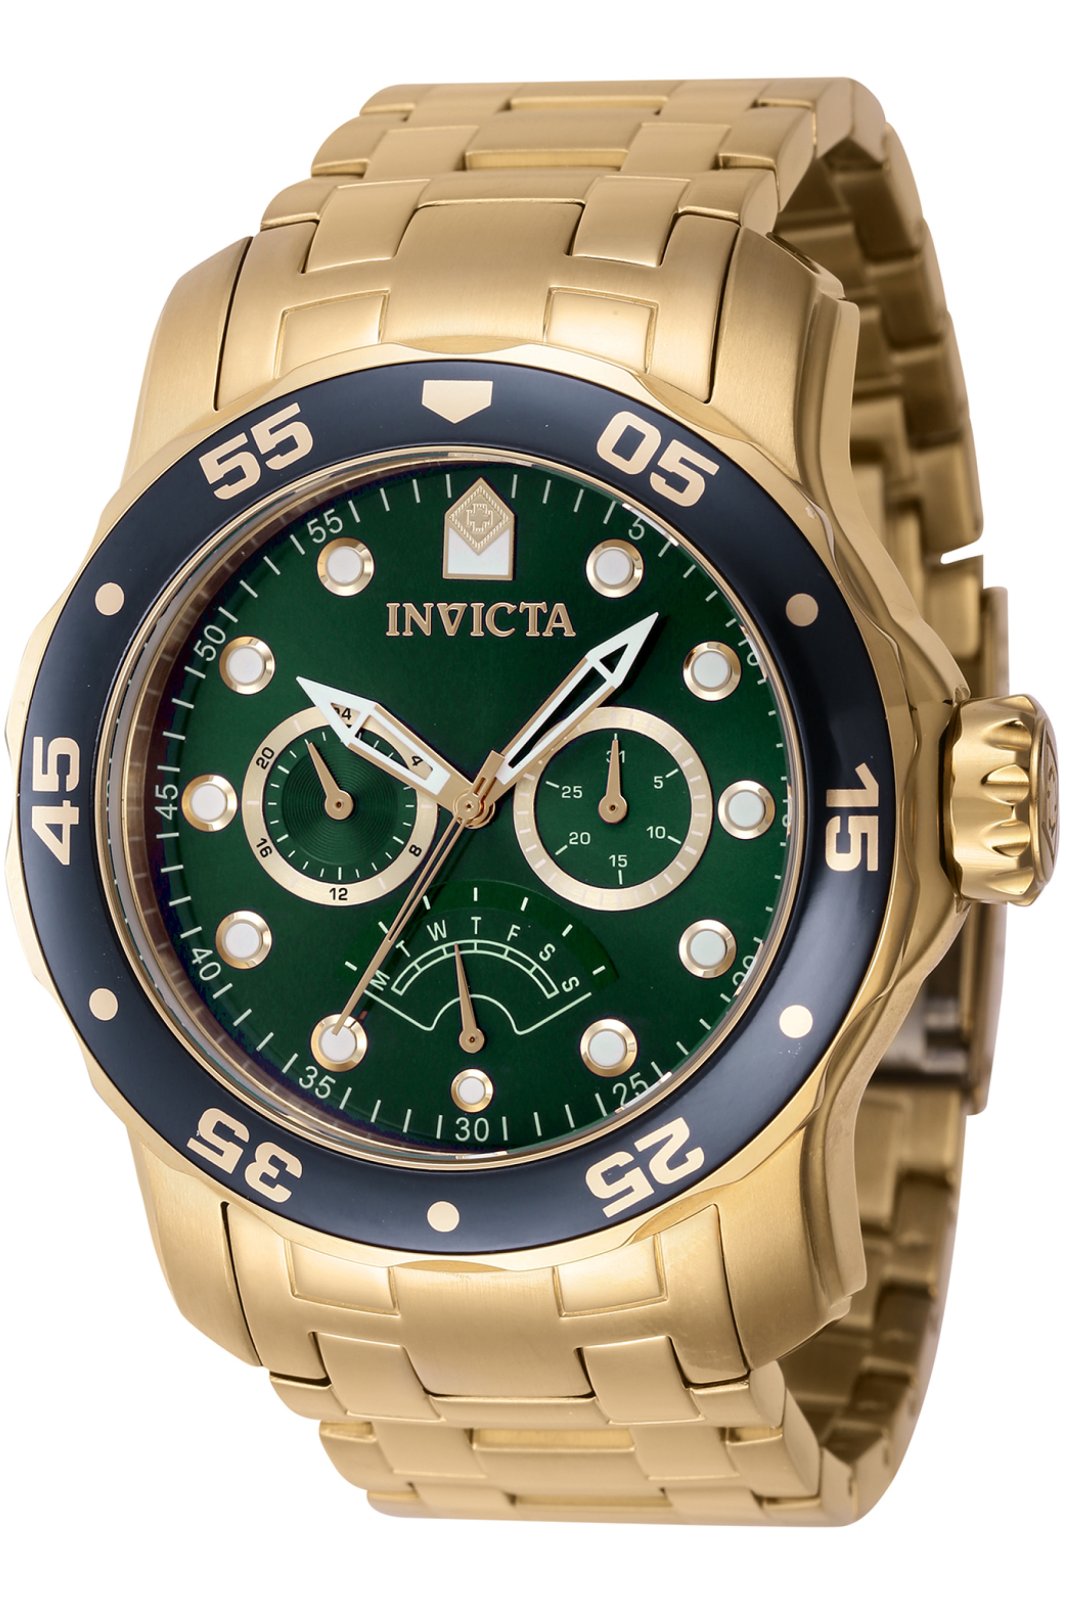 Invicta Pro Diver 46998 Men's Quartz Watch - 48mm